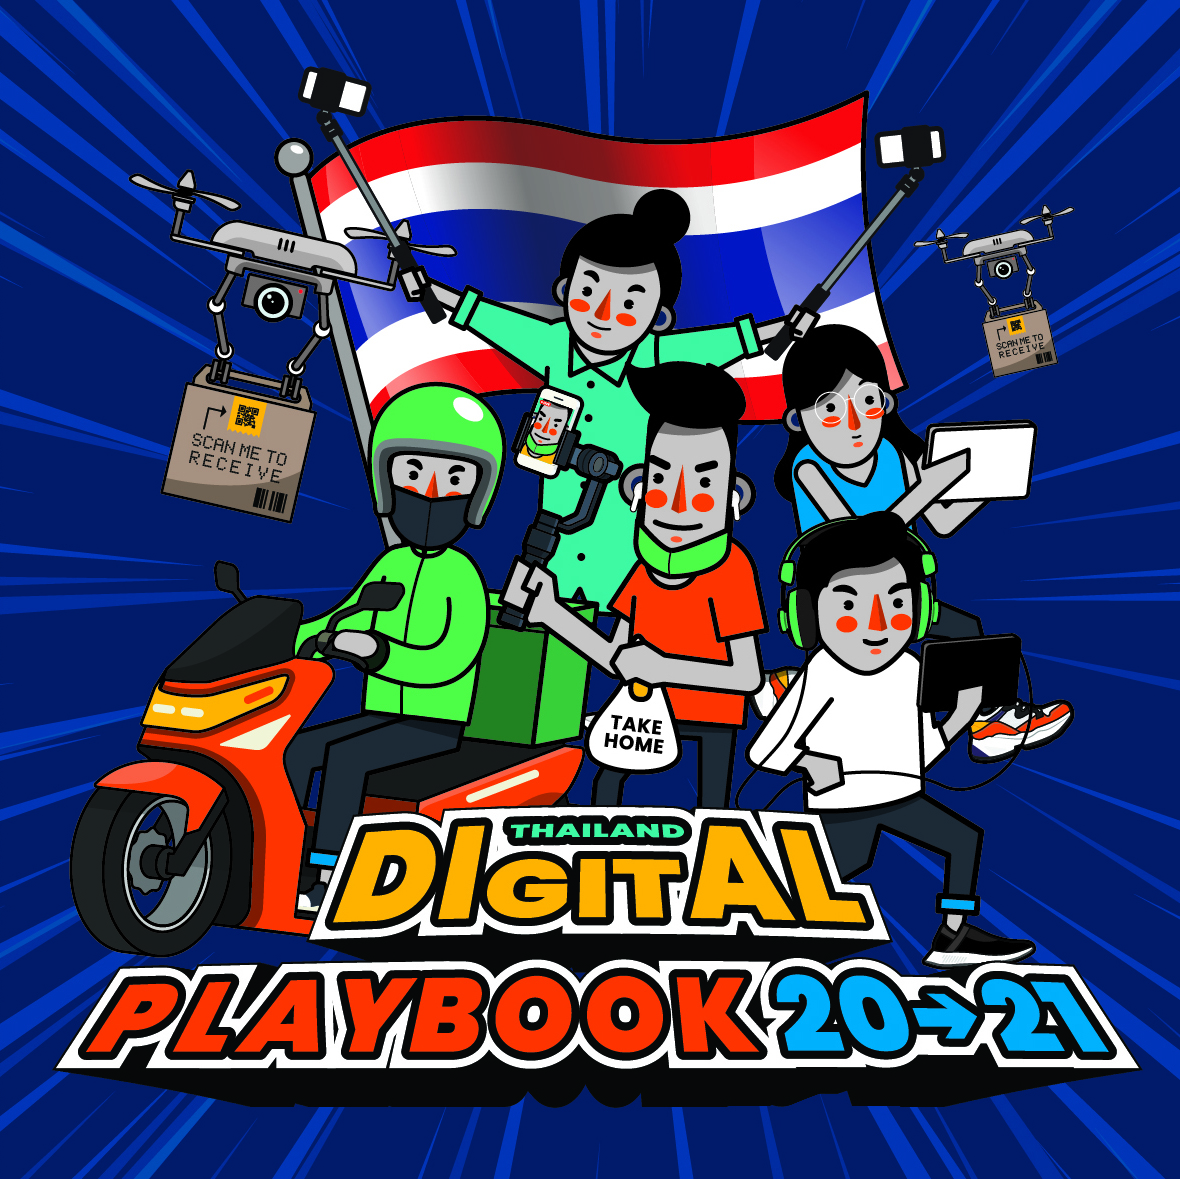 Group M Digital Playbook 20-21